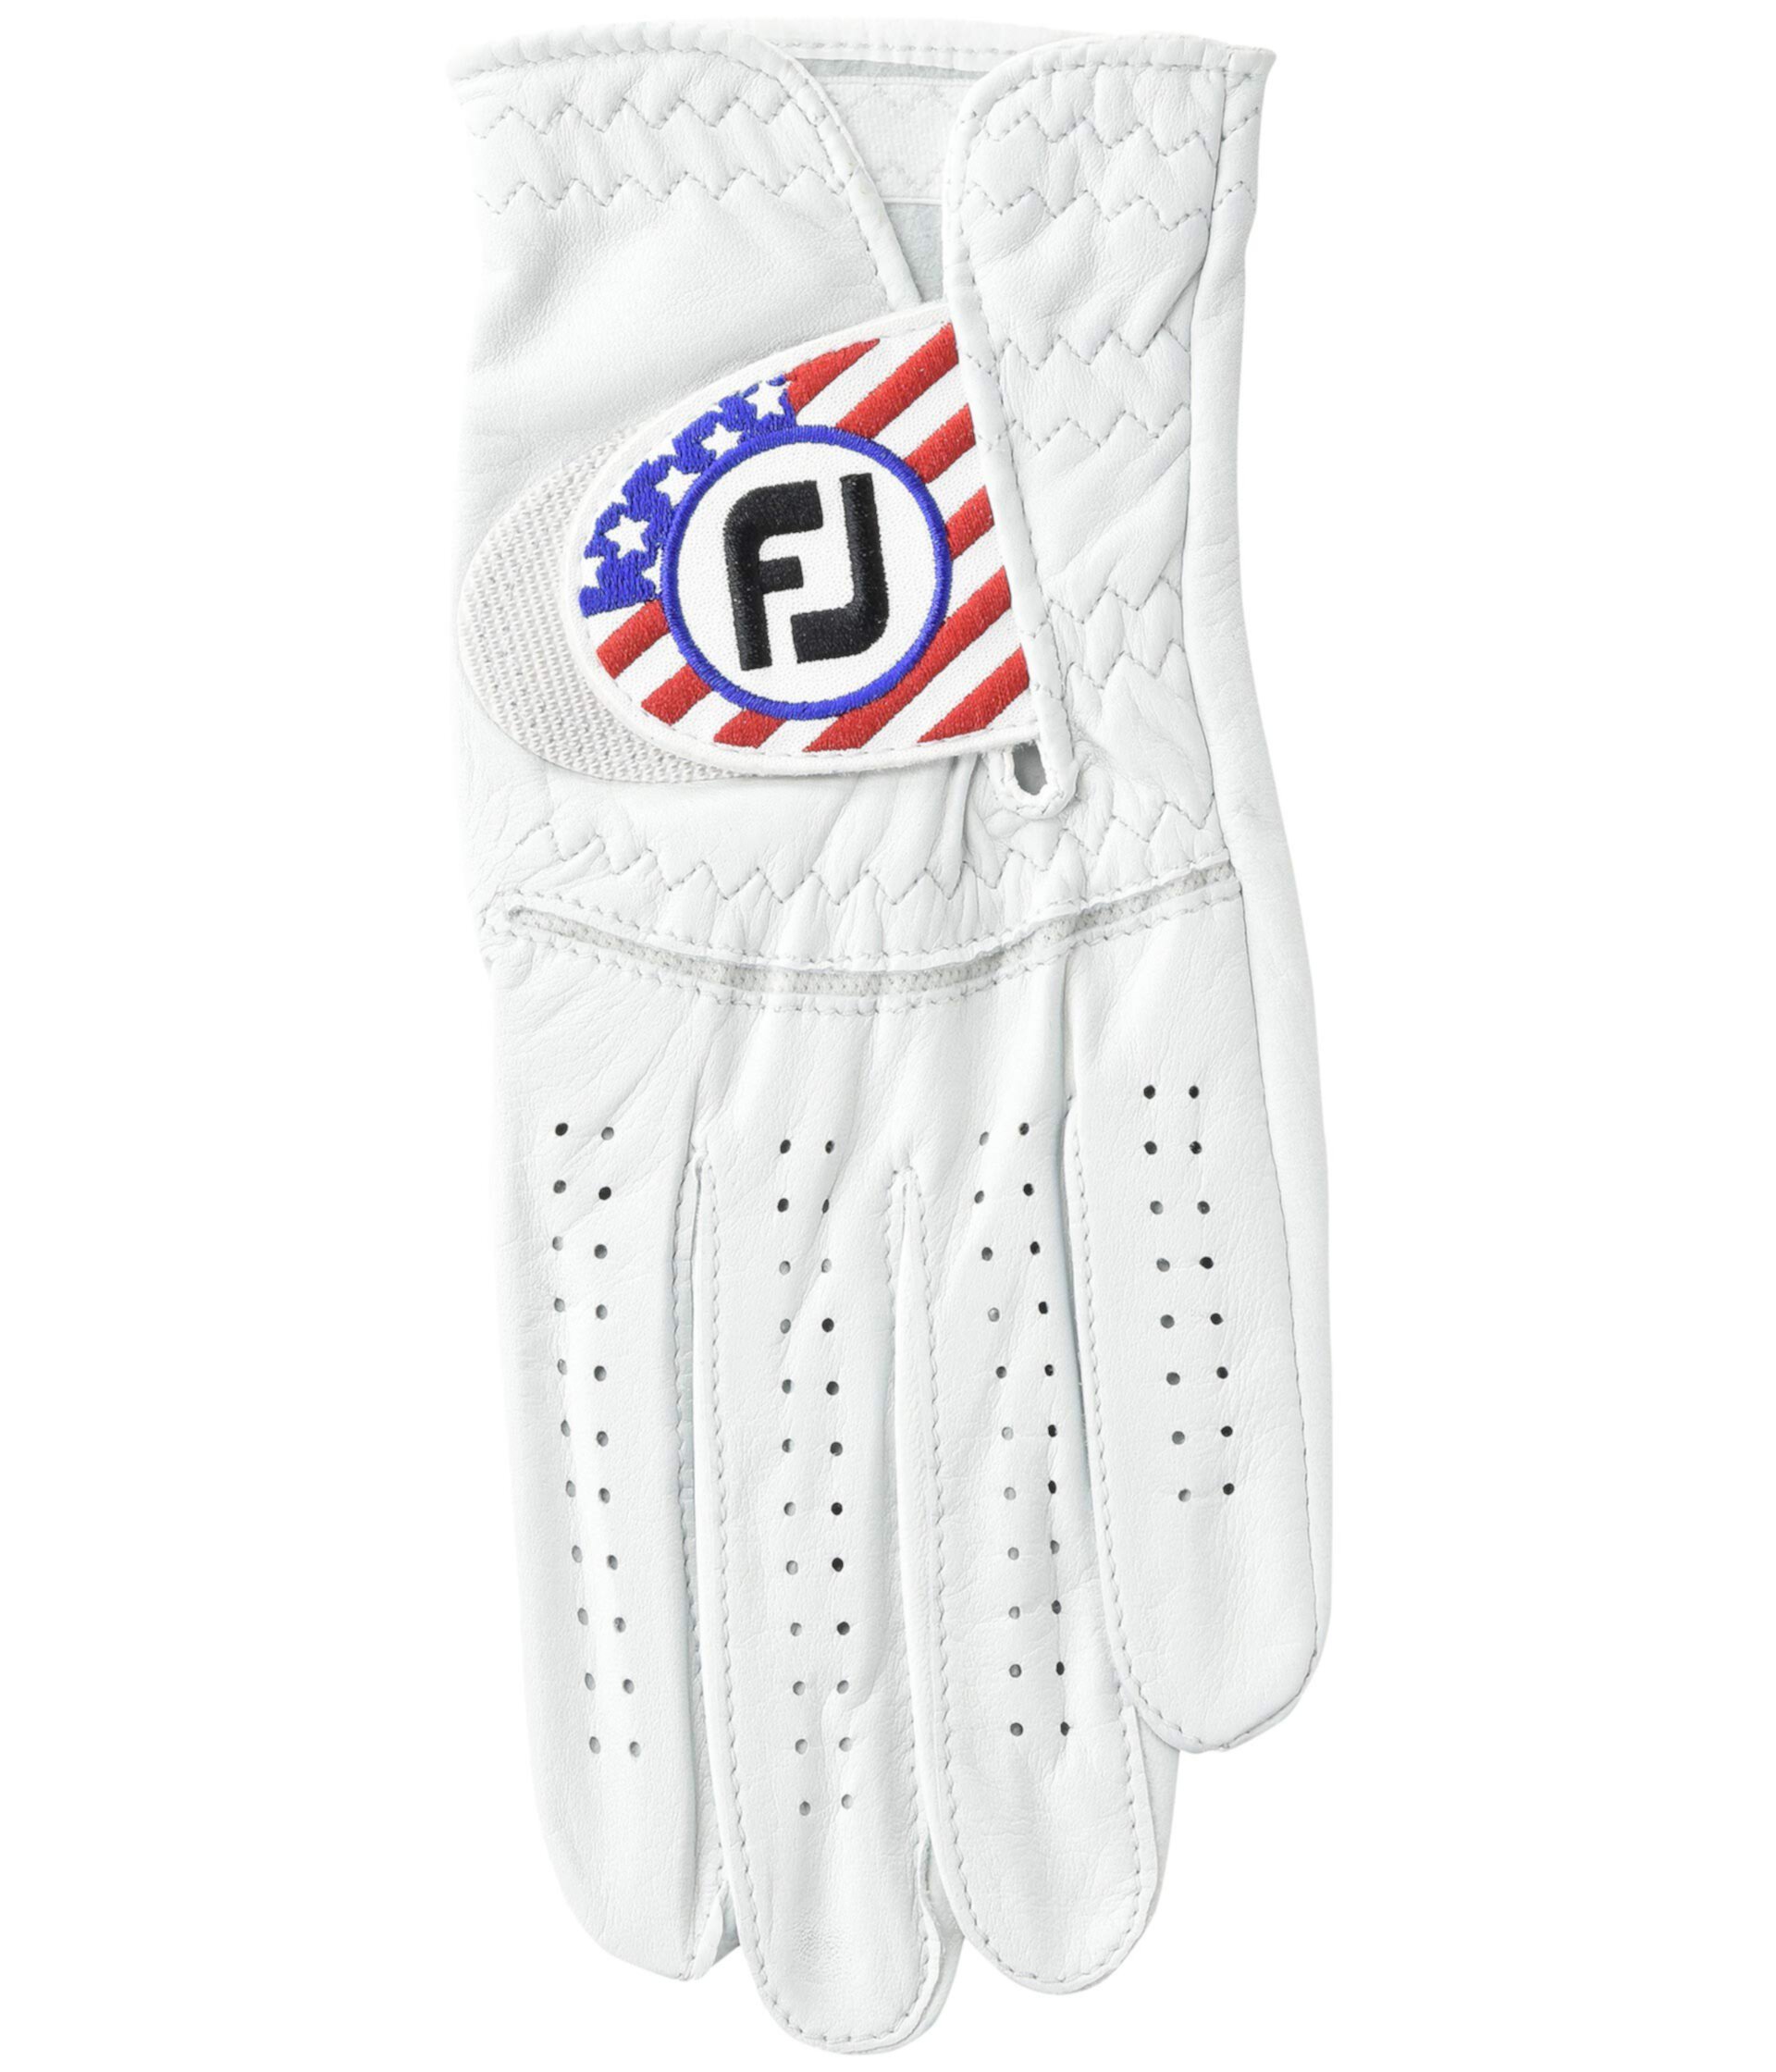 StaSof Flag Обычные левые перчатки для гольфа FootJoy